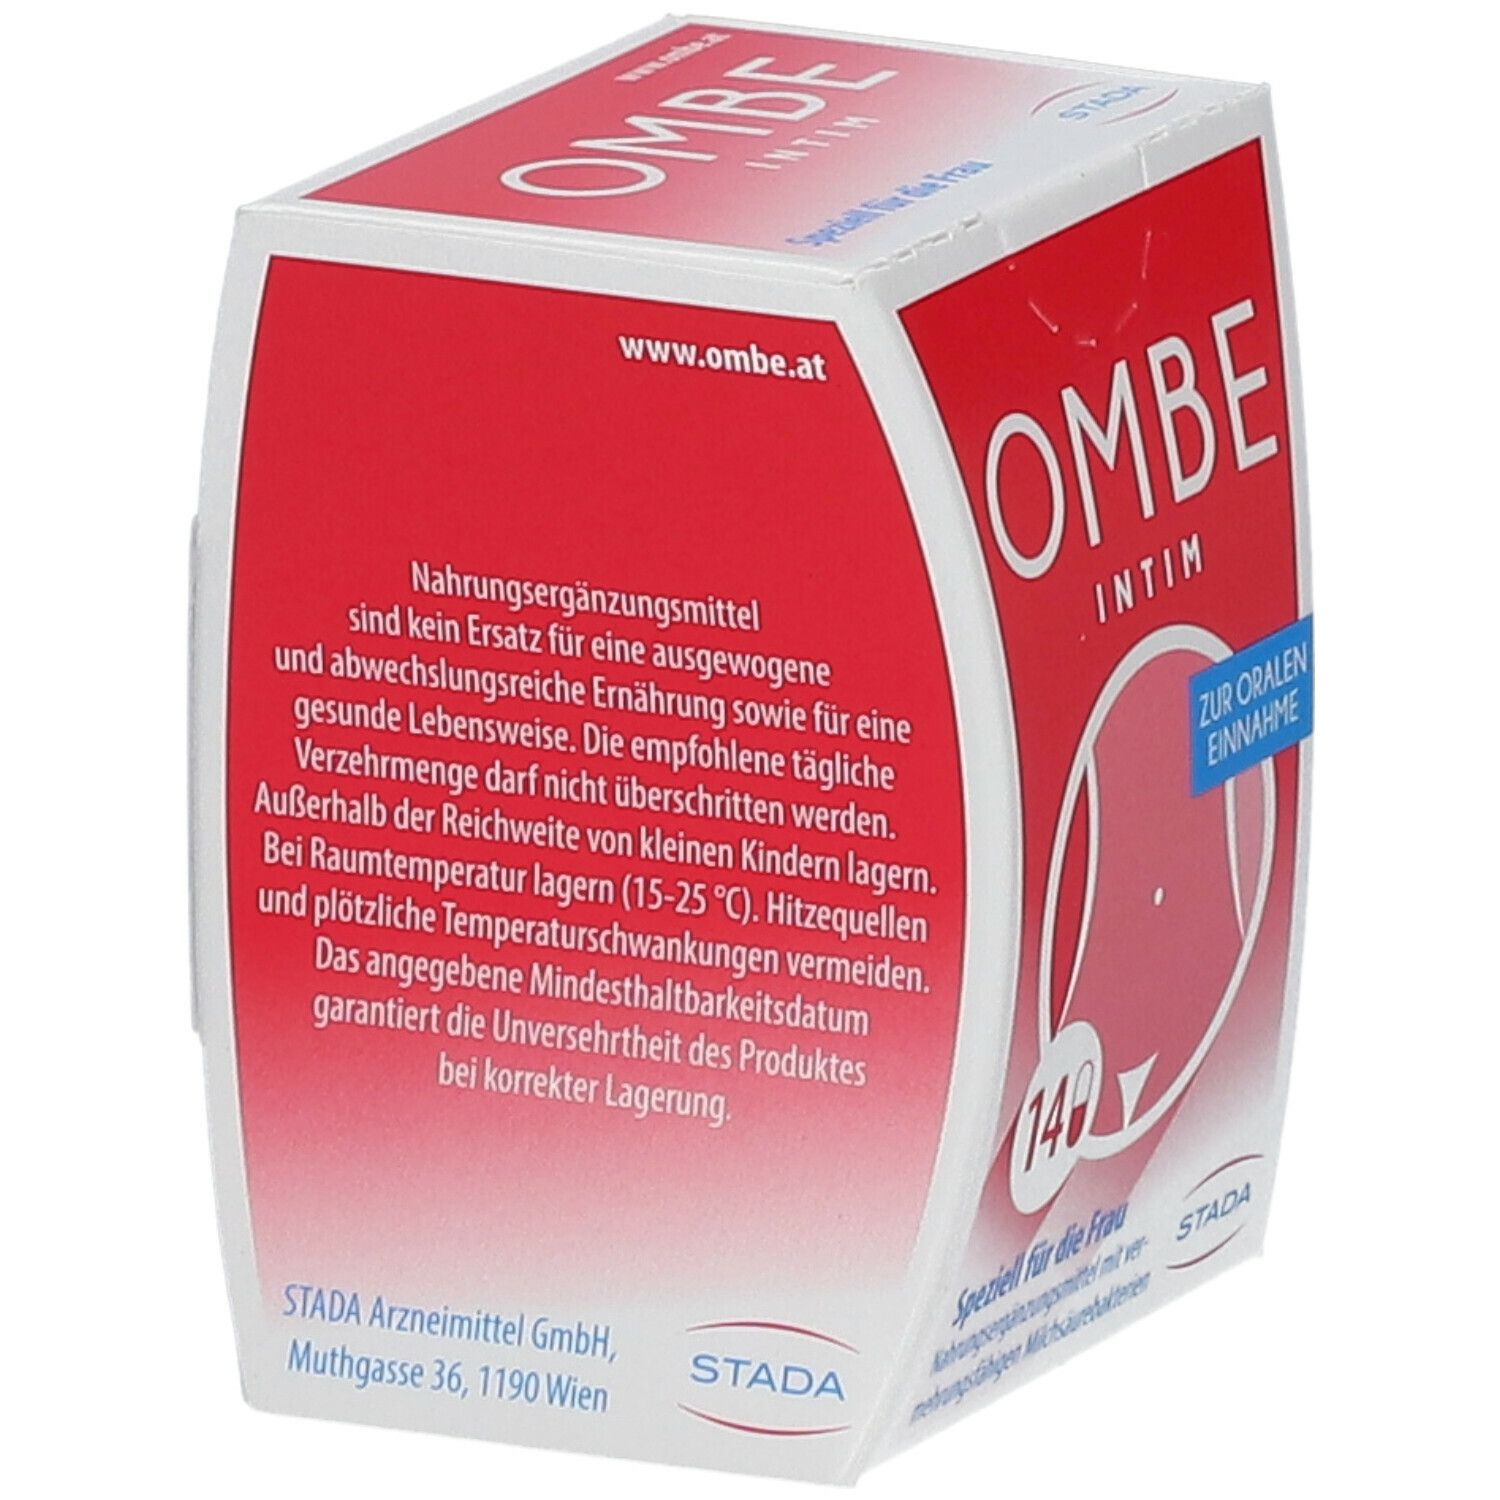 Ombe® Intim Kapseln, Gesunderhaltung der Vaginalflora, auch als Begleittherapie